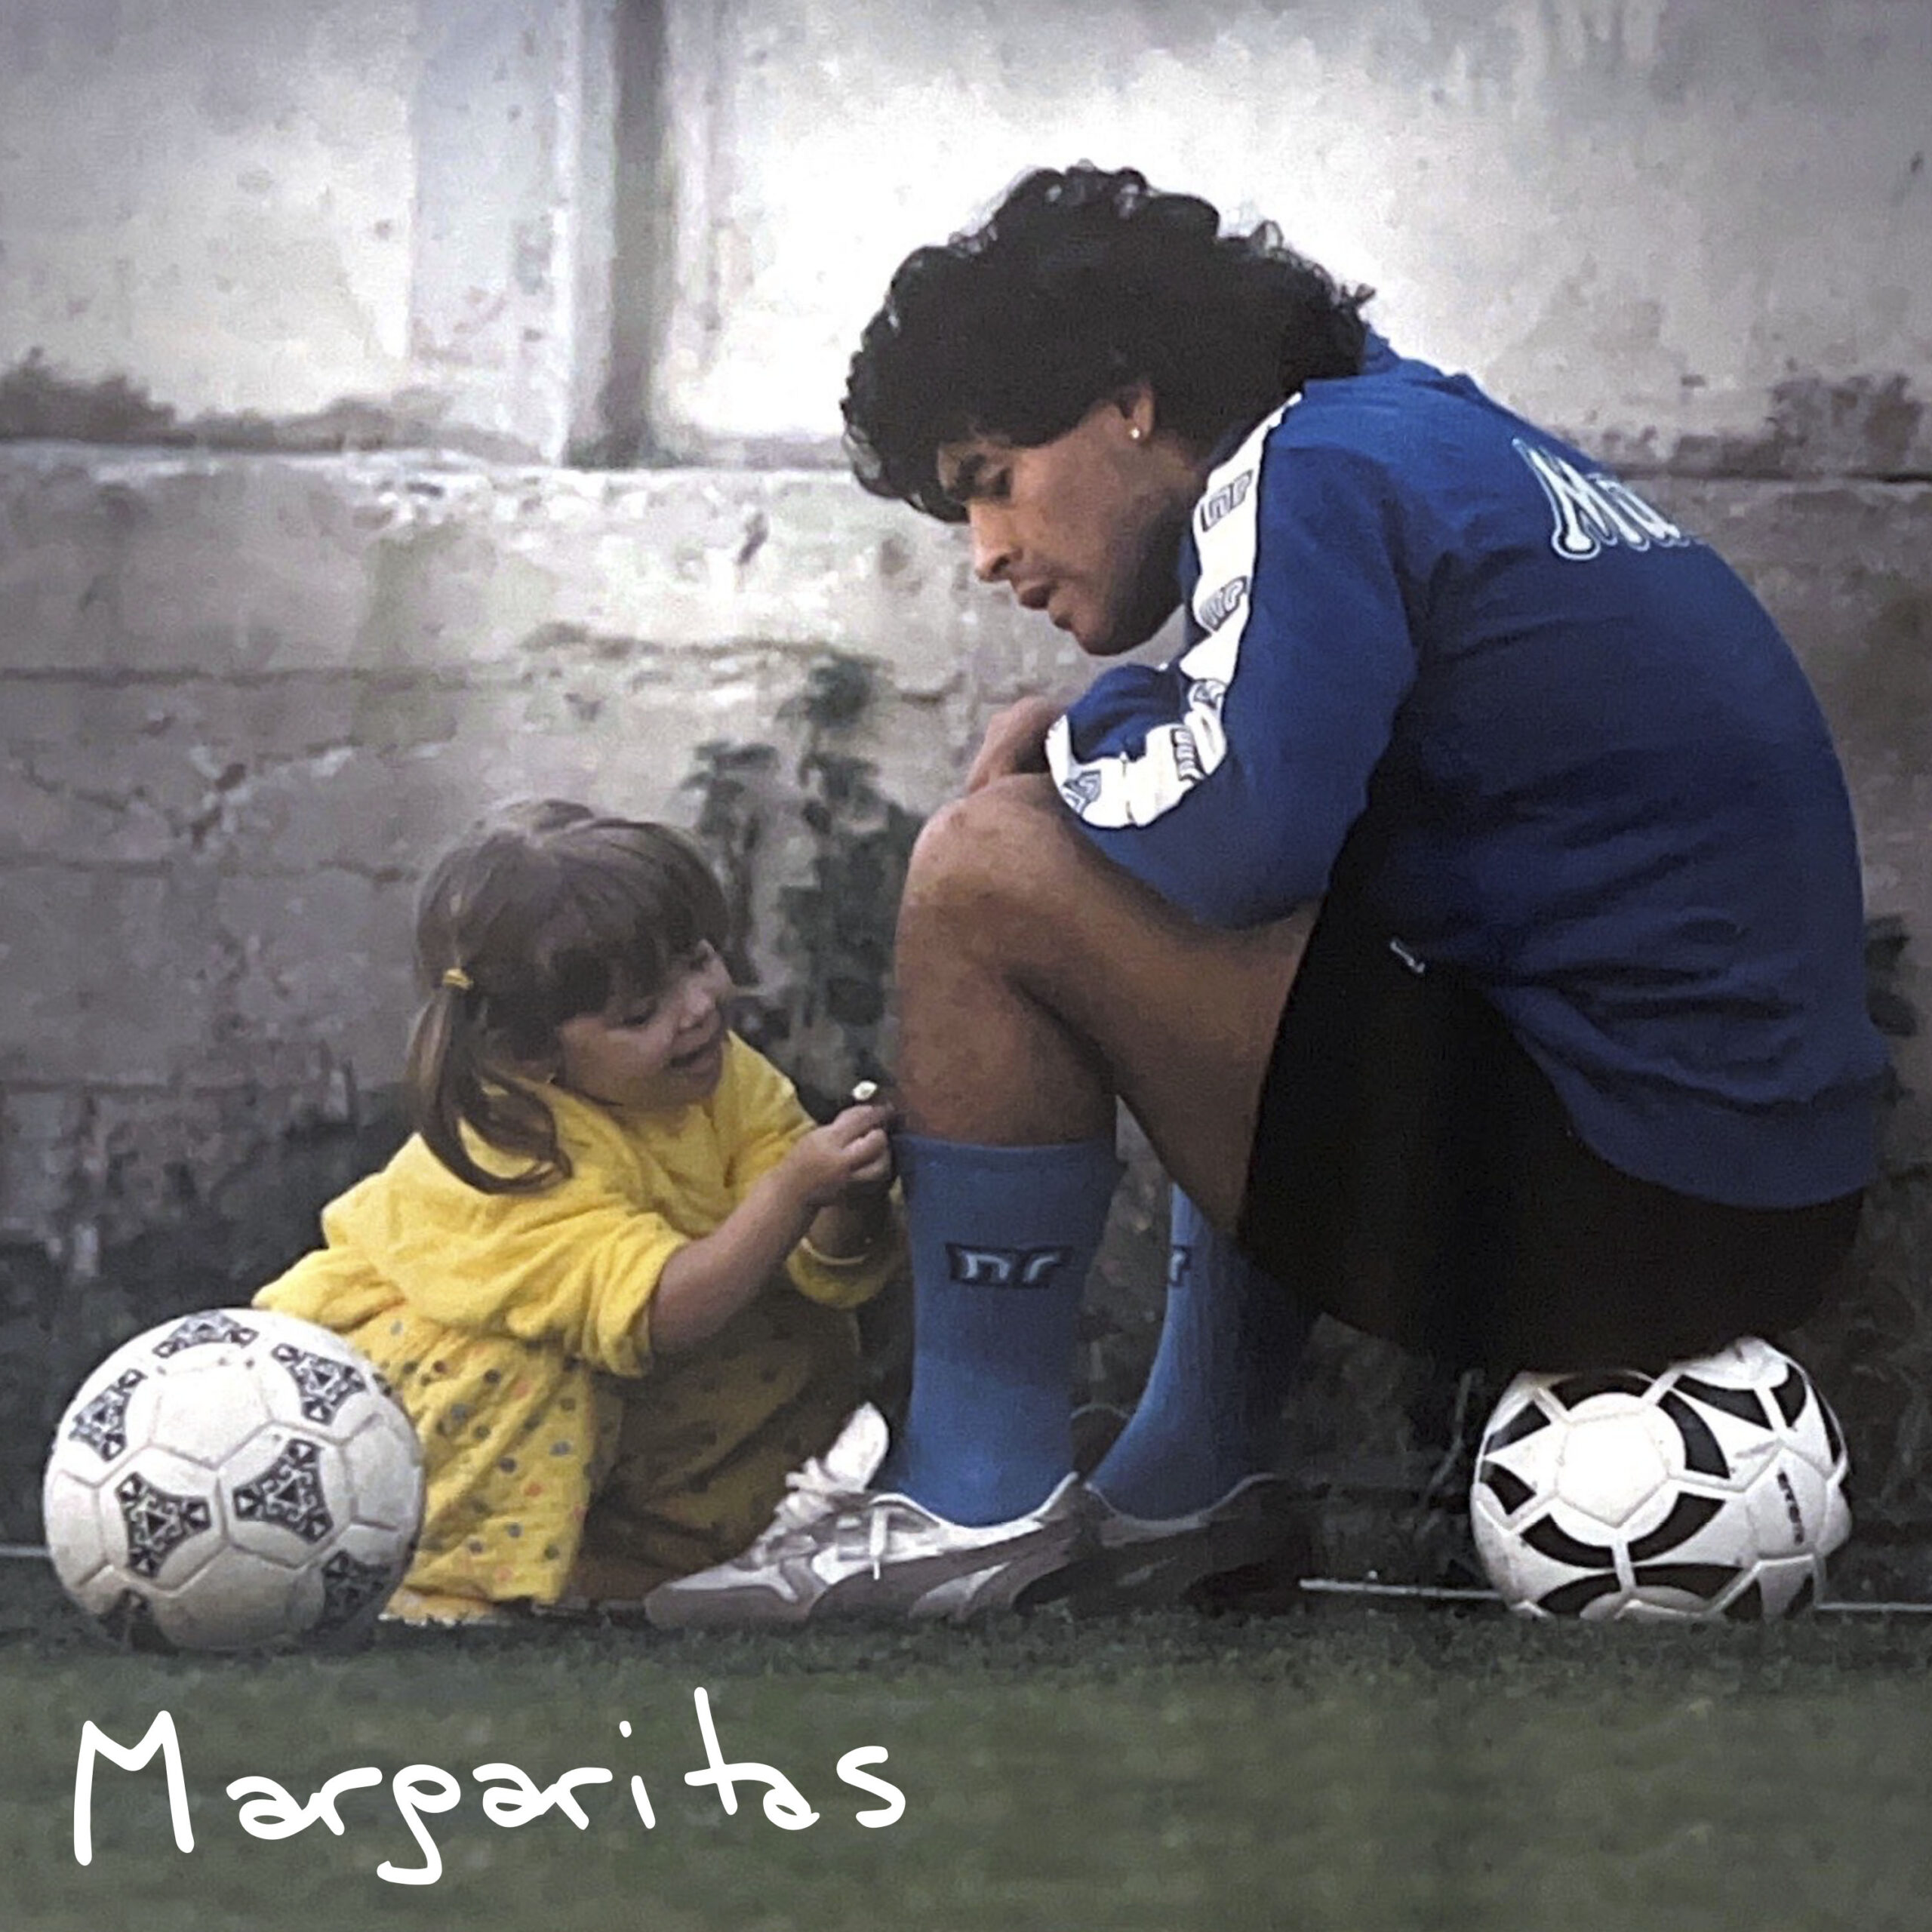 «Margaritas», el emotivo homenaje de Dalma a su padre, Diego Maradona